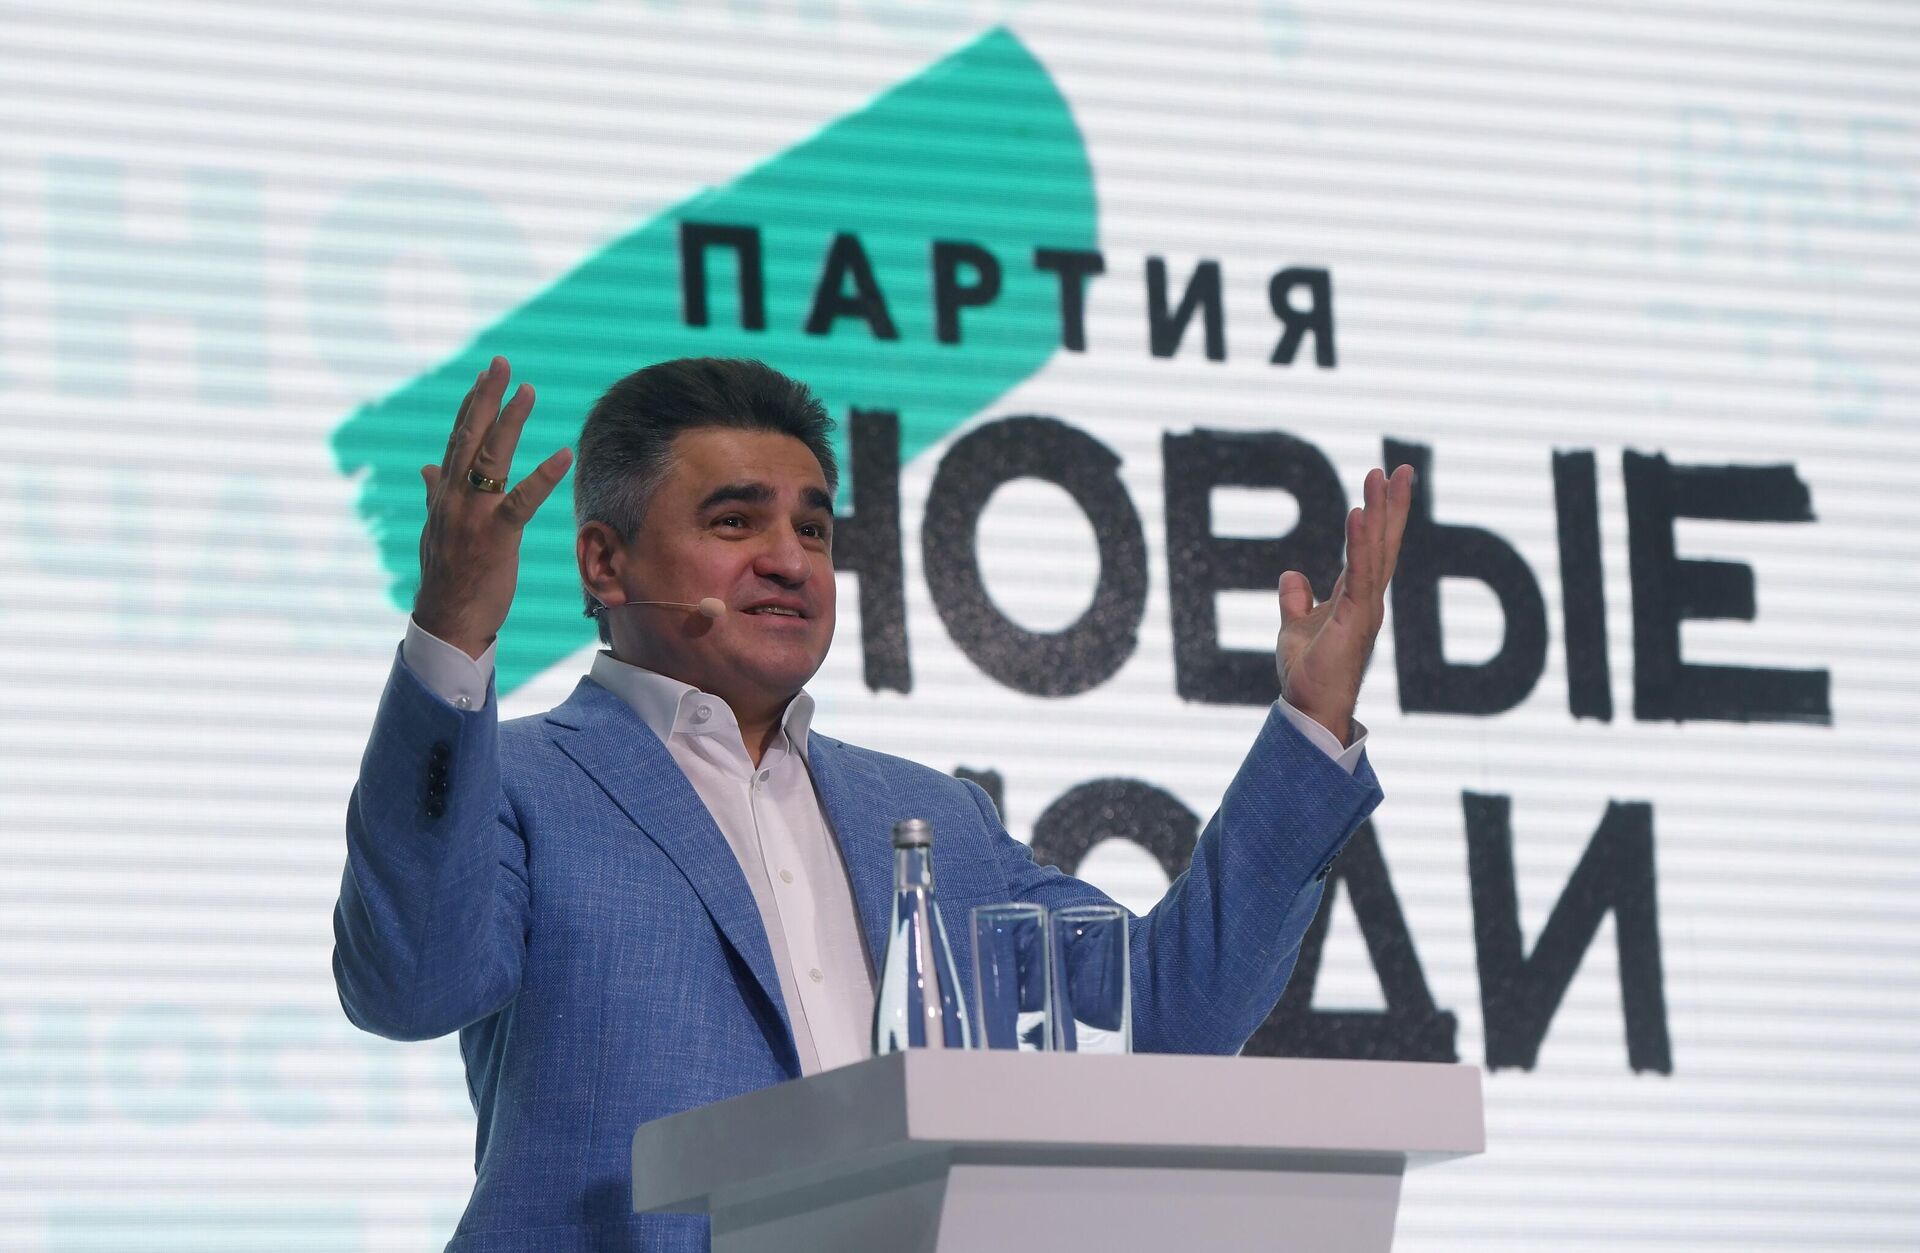 Список от "Новых людей" на выборы в ГД возглавили Нечаев и Авксентьева